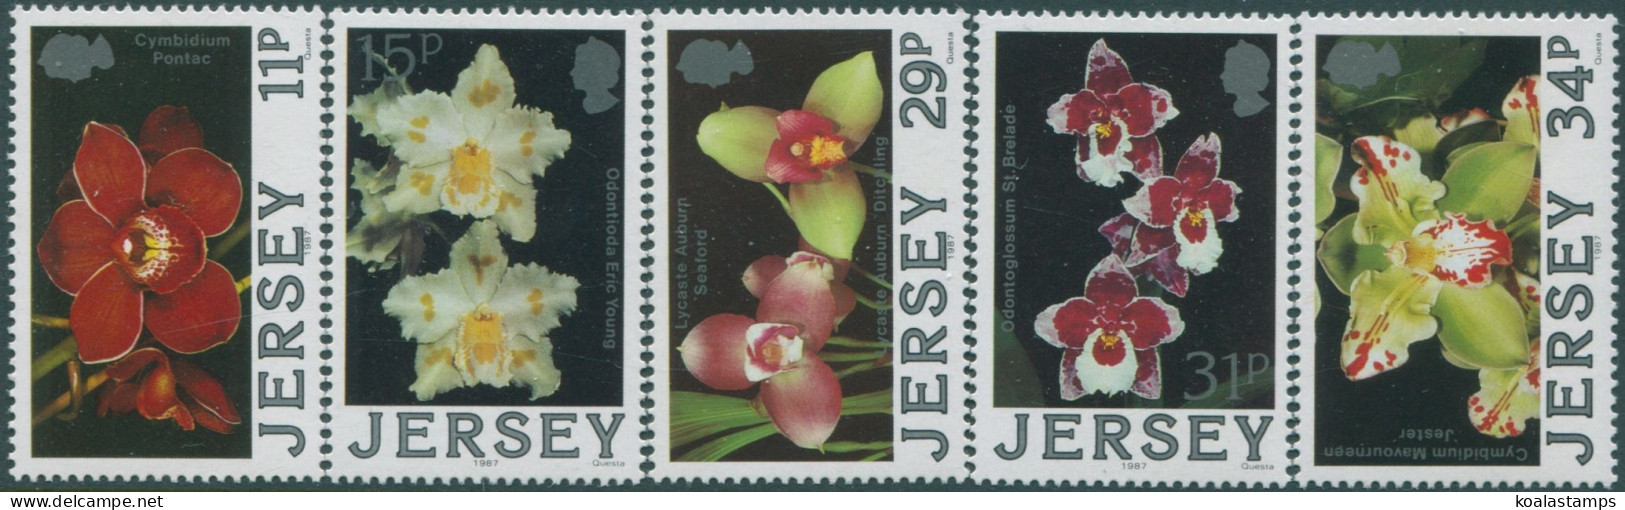 Jersey 1988 SG433-437 Orchids Set MNH - Jersey